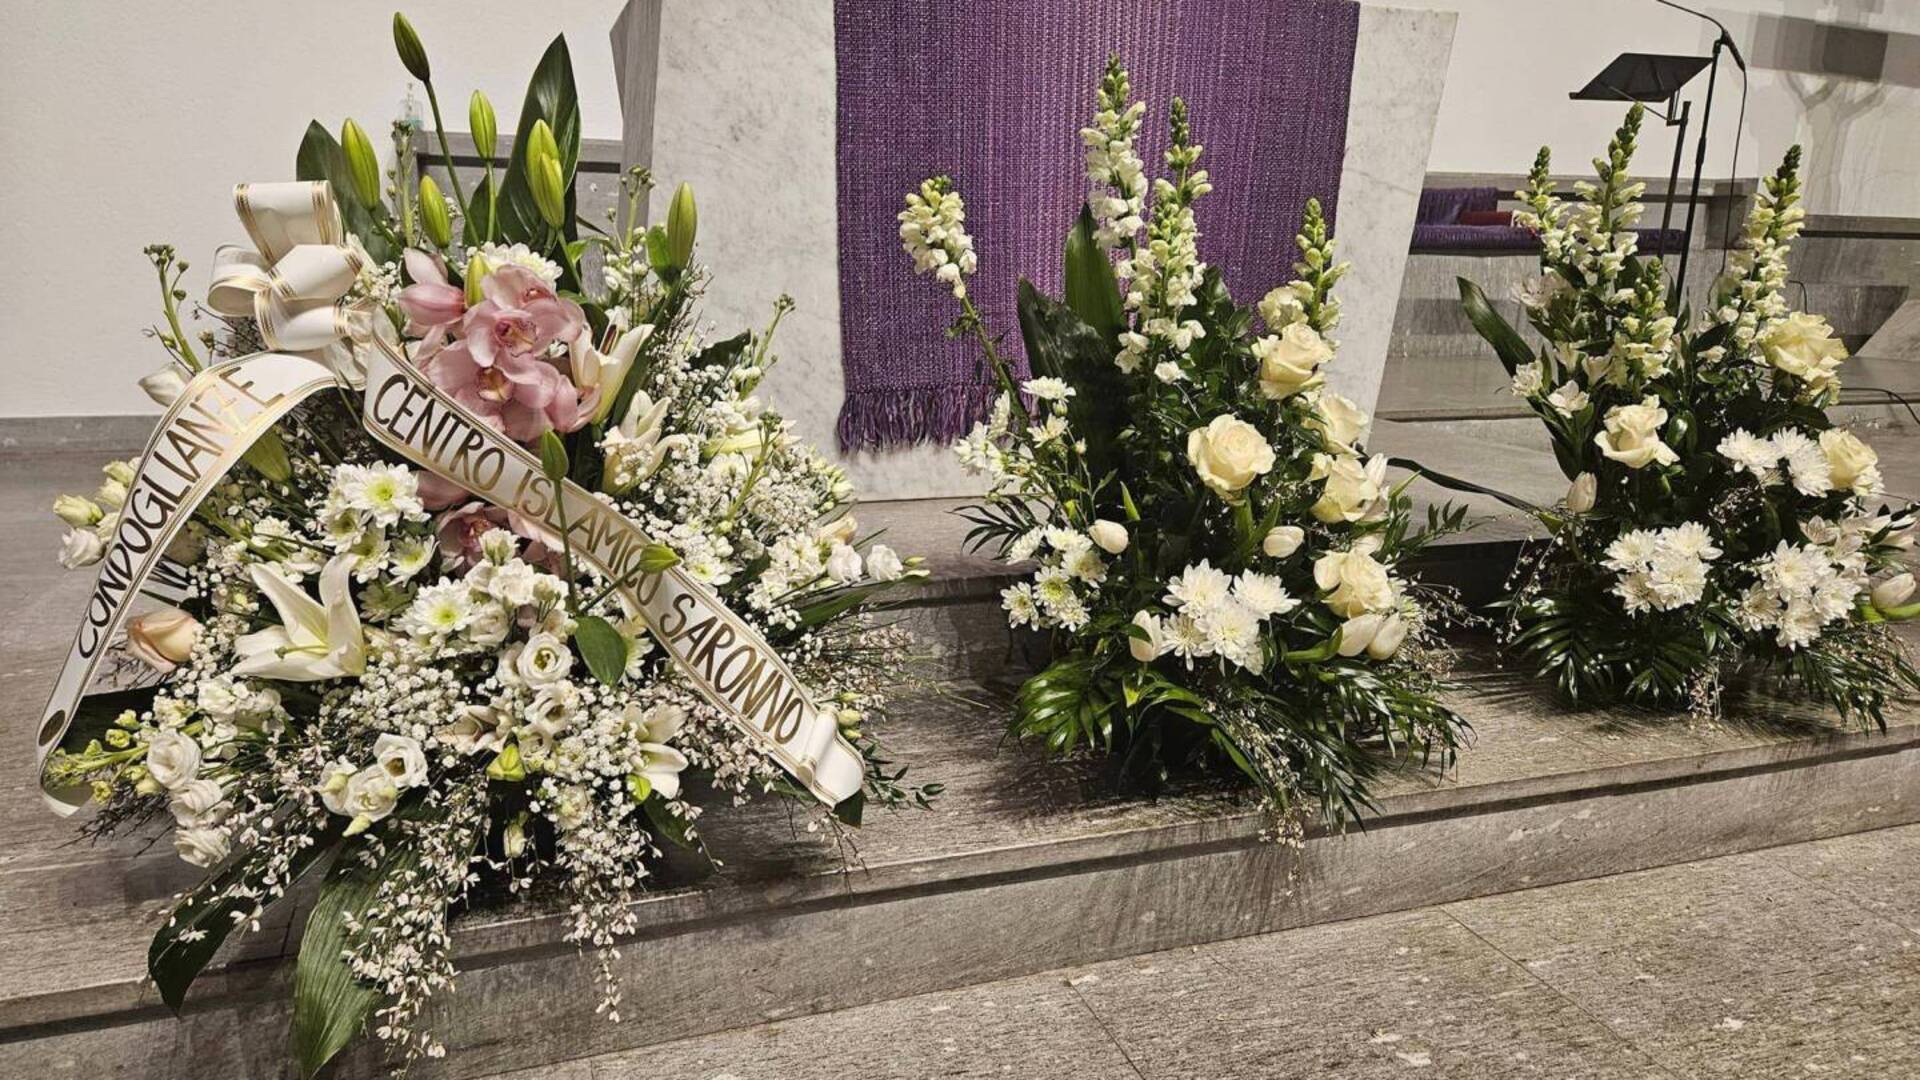 Addio suor Annunciata, il centro islamico al funerale: “Era un’operaia instancabile della convivenza tra culture”